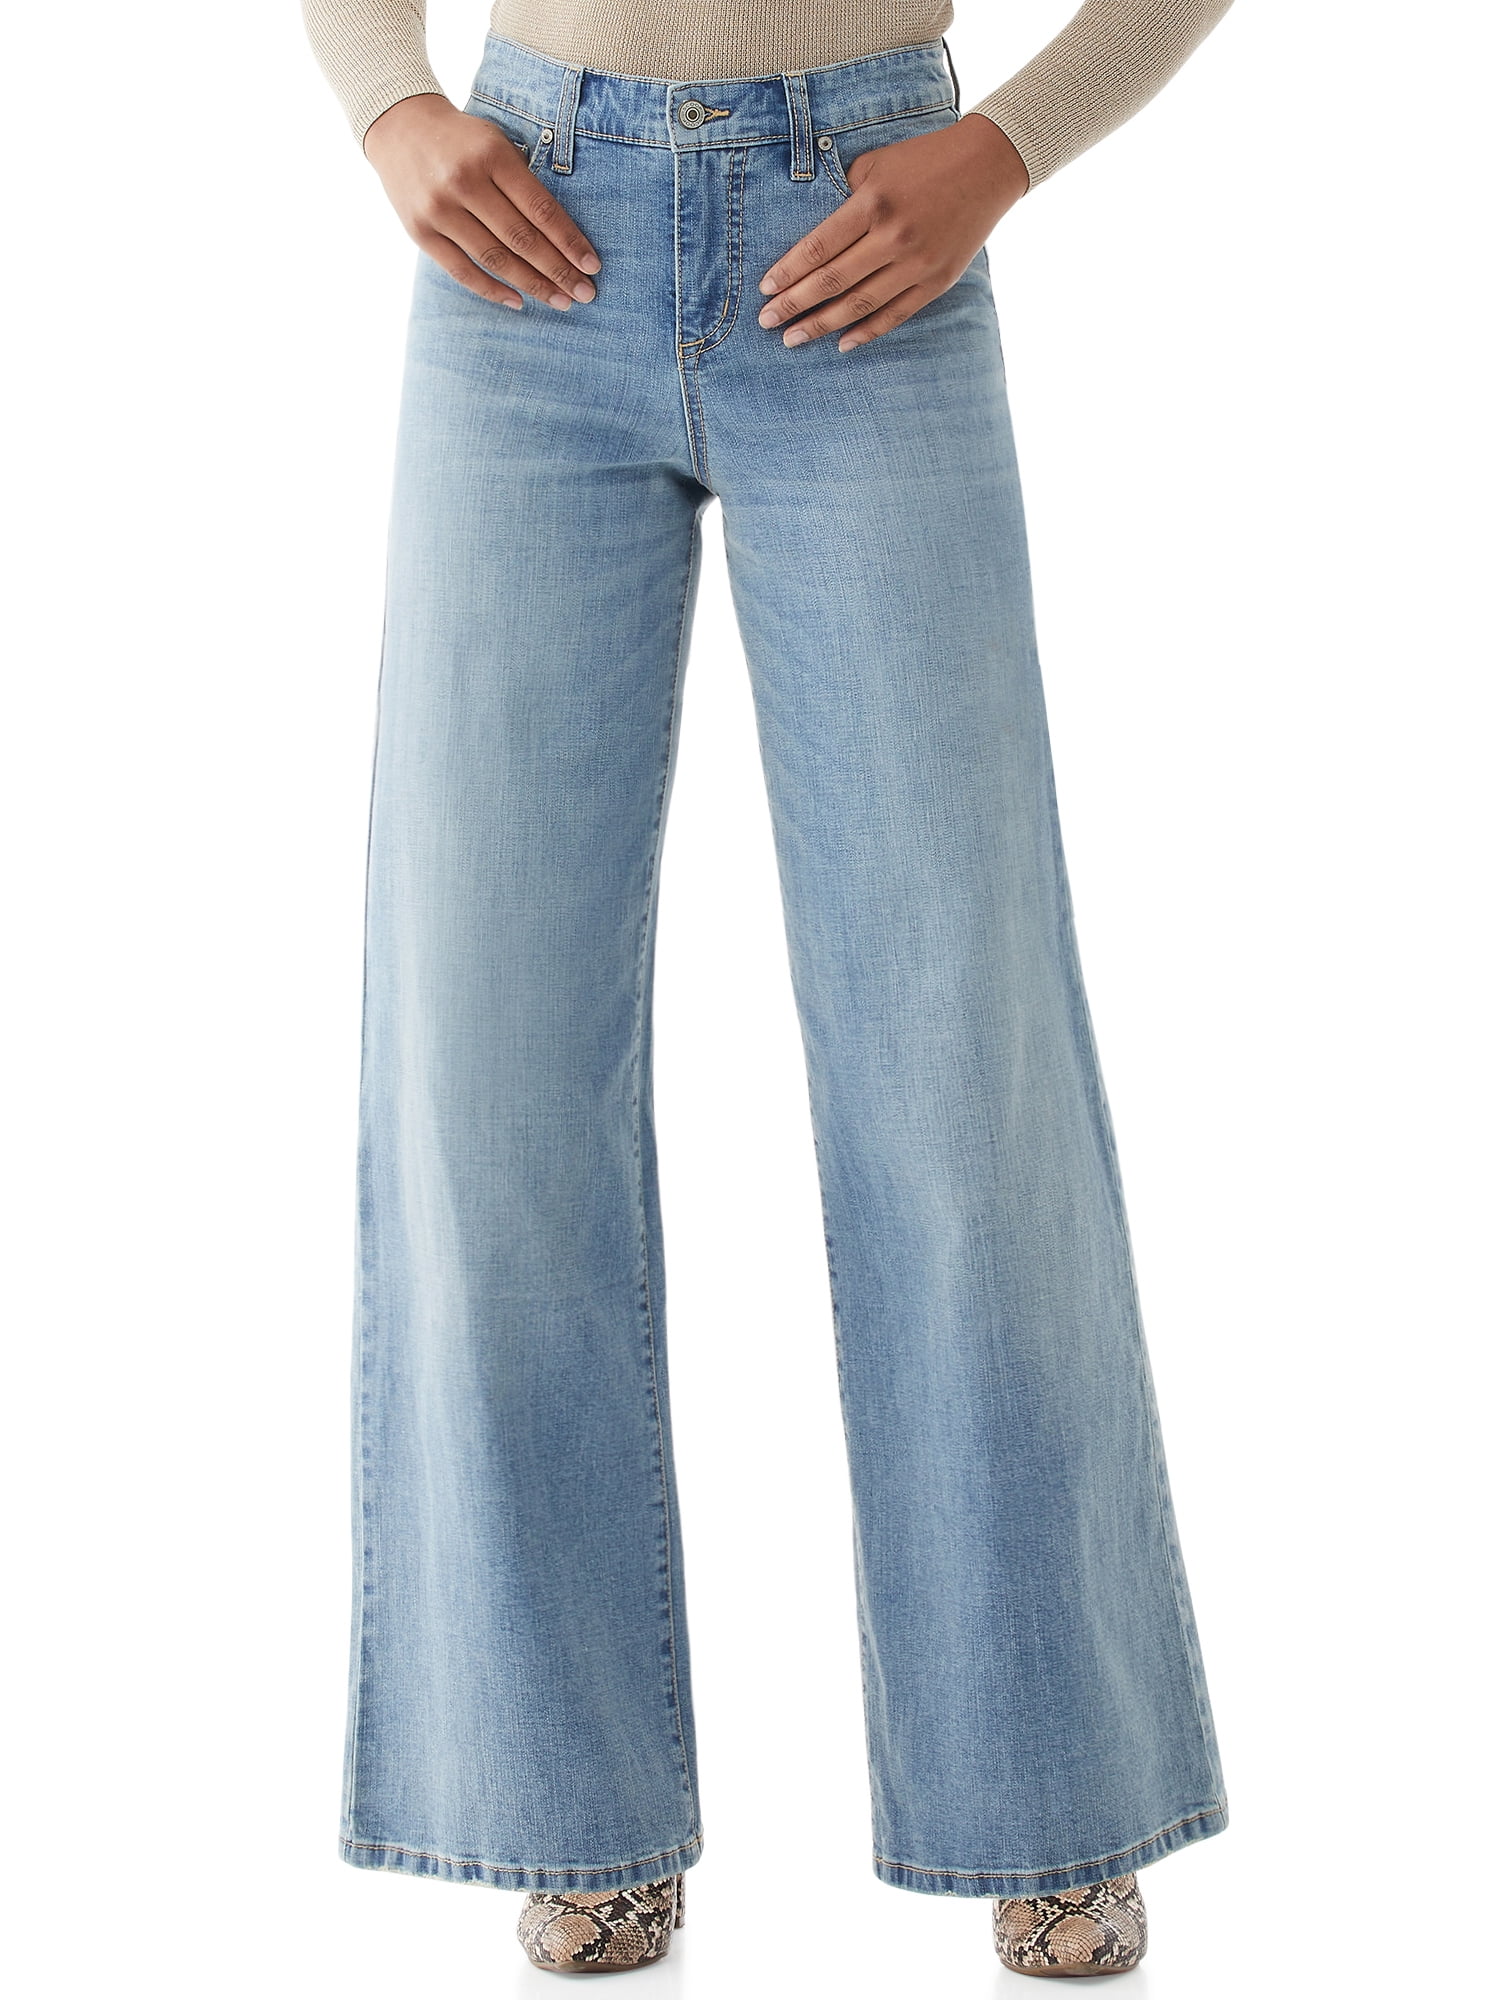 Scoop - Scoop Women’s Super Wide Leg Jeans - Walmart.com - Walmart.com